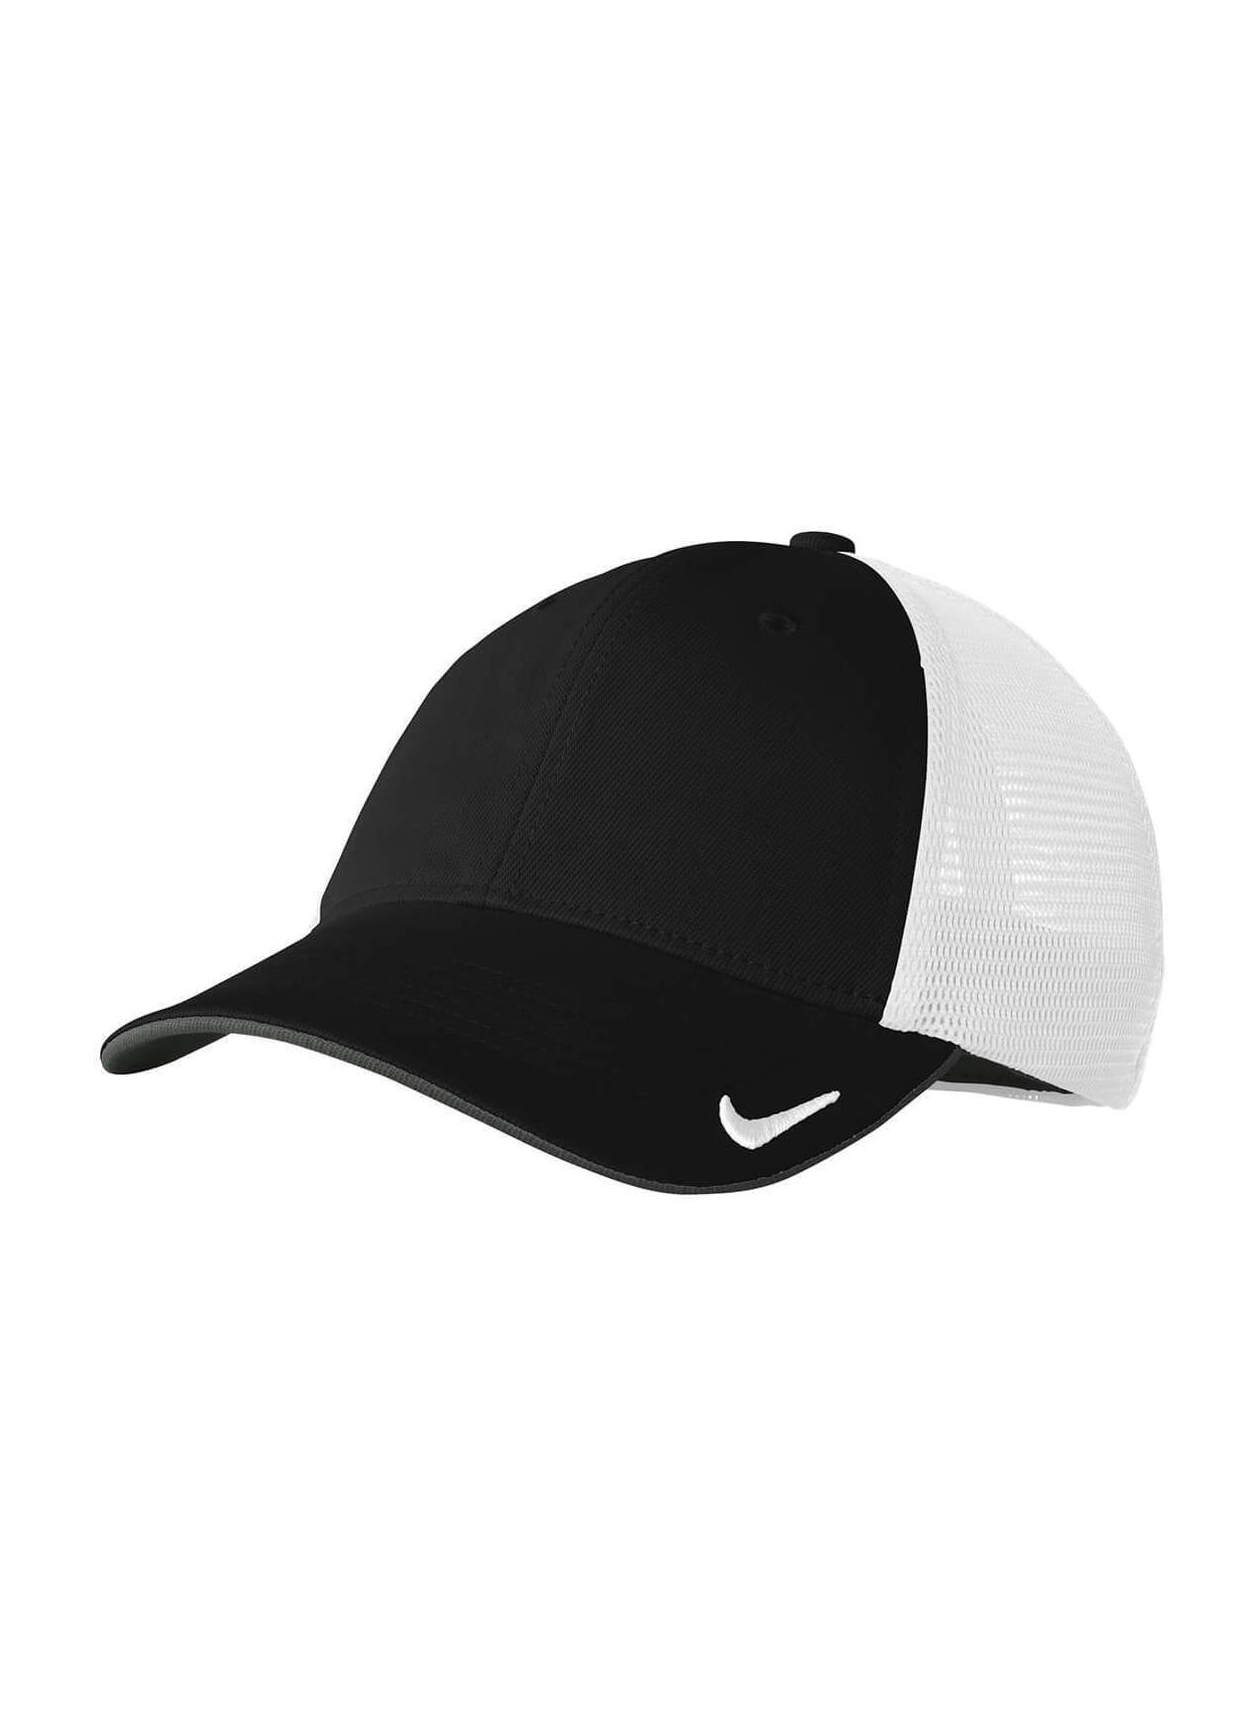 / White Nike Dri-FIT Mesh Back Hat | Nike